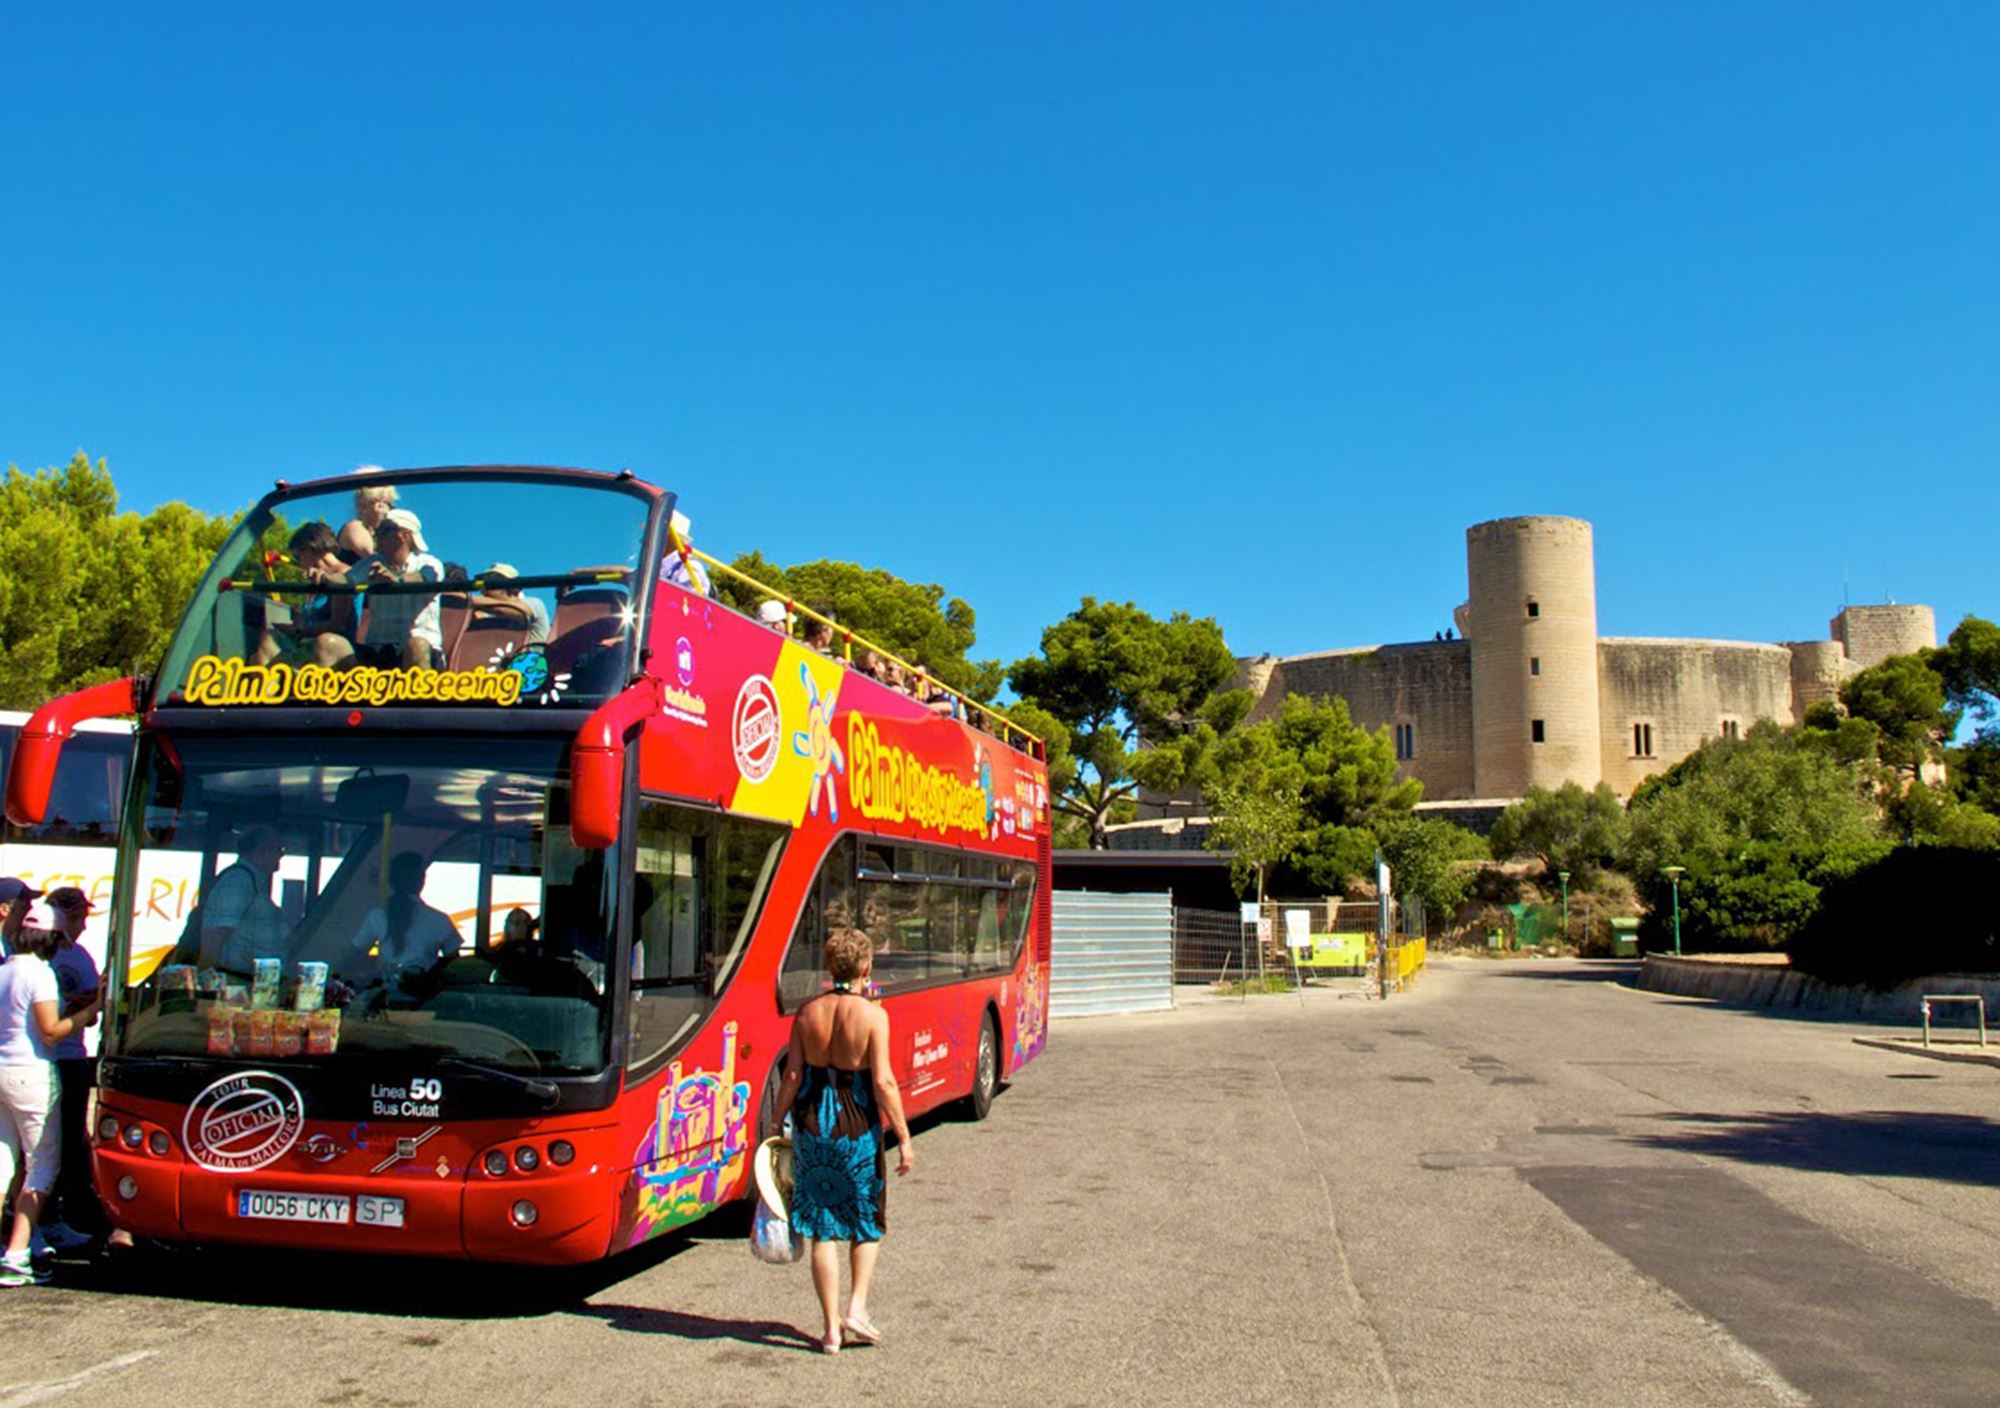 réservations visites guidées Bus Touristique City Sightseeing Palma de Mallorca billets visiter